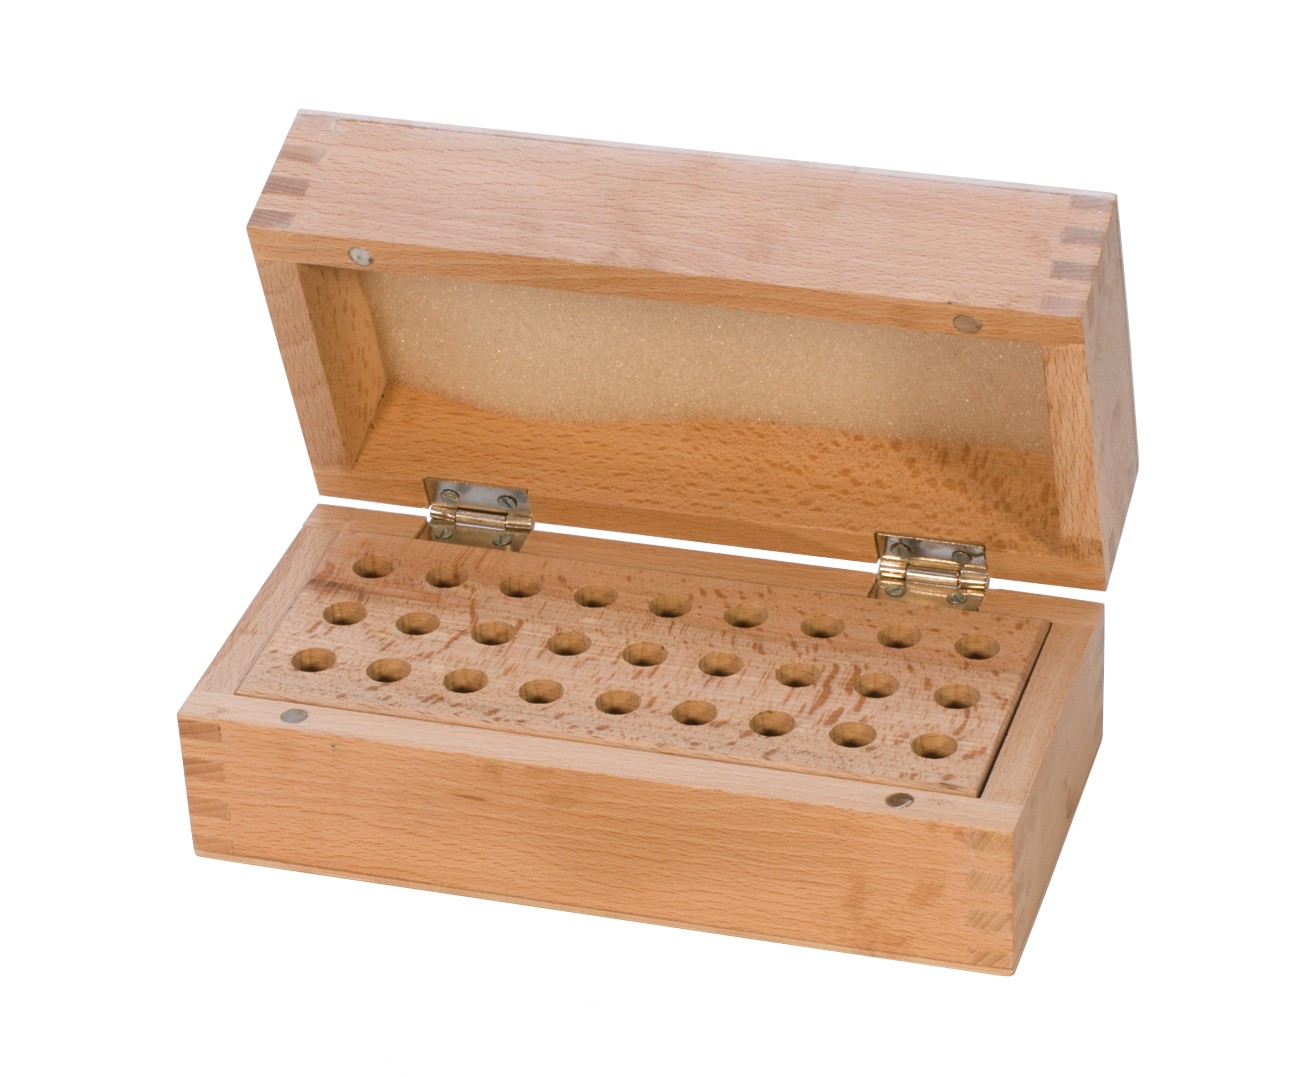 Wooden Stamp Storage Box Organizer with 27 Holes